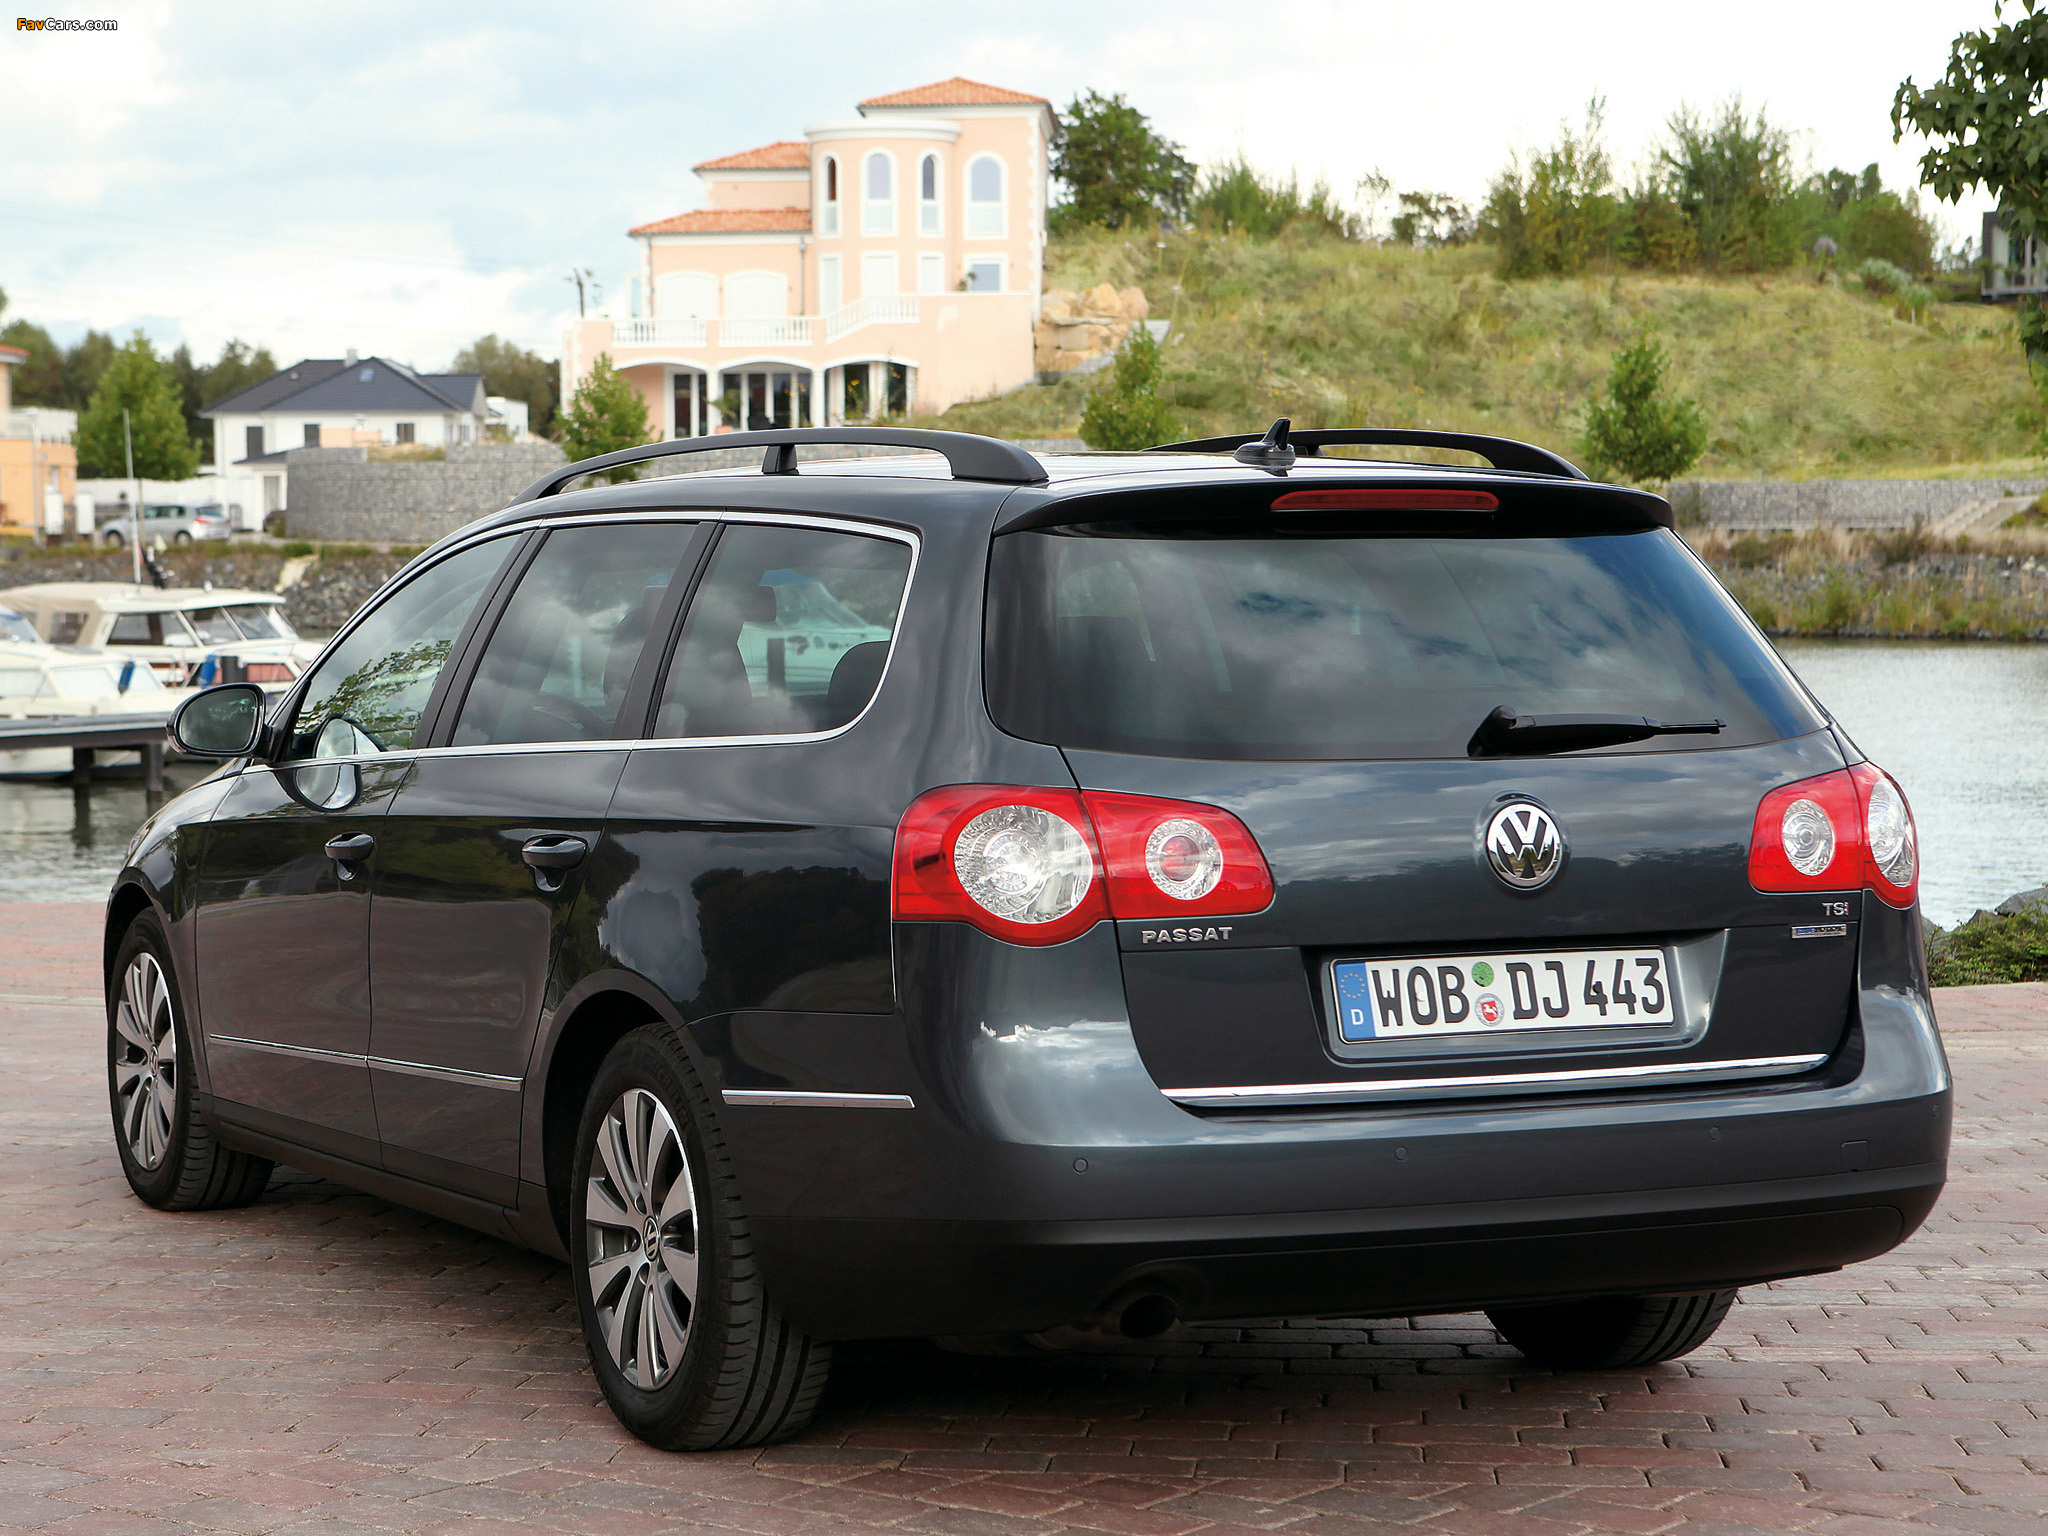 Фольксваген пассат универсал 2.0. Volkswagen Passat 2008 универсал. Фольксваген Passat b6 variant. Volkswagen Passat b6 универсал. Пассат б6 2.0 универсал.